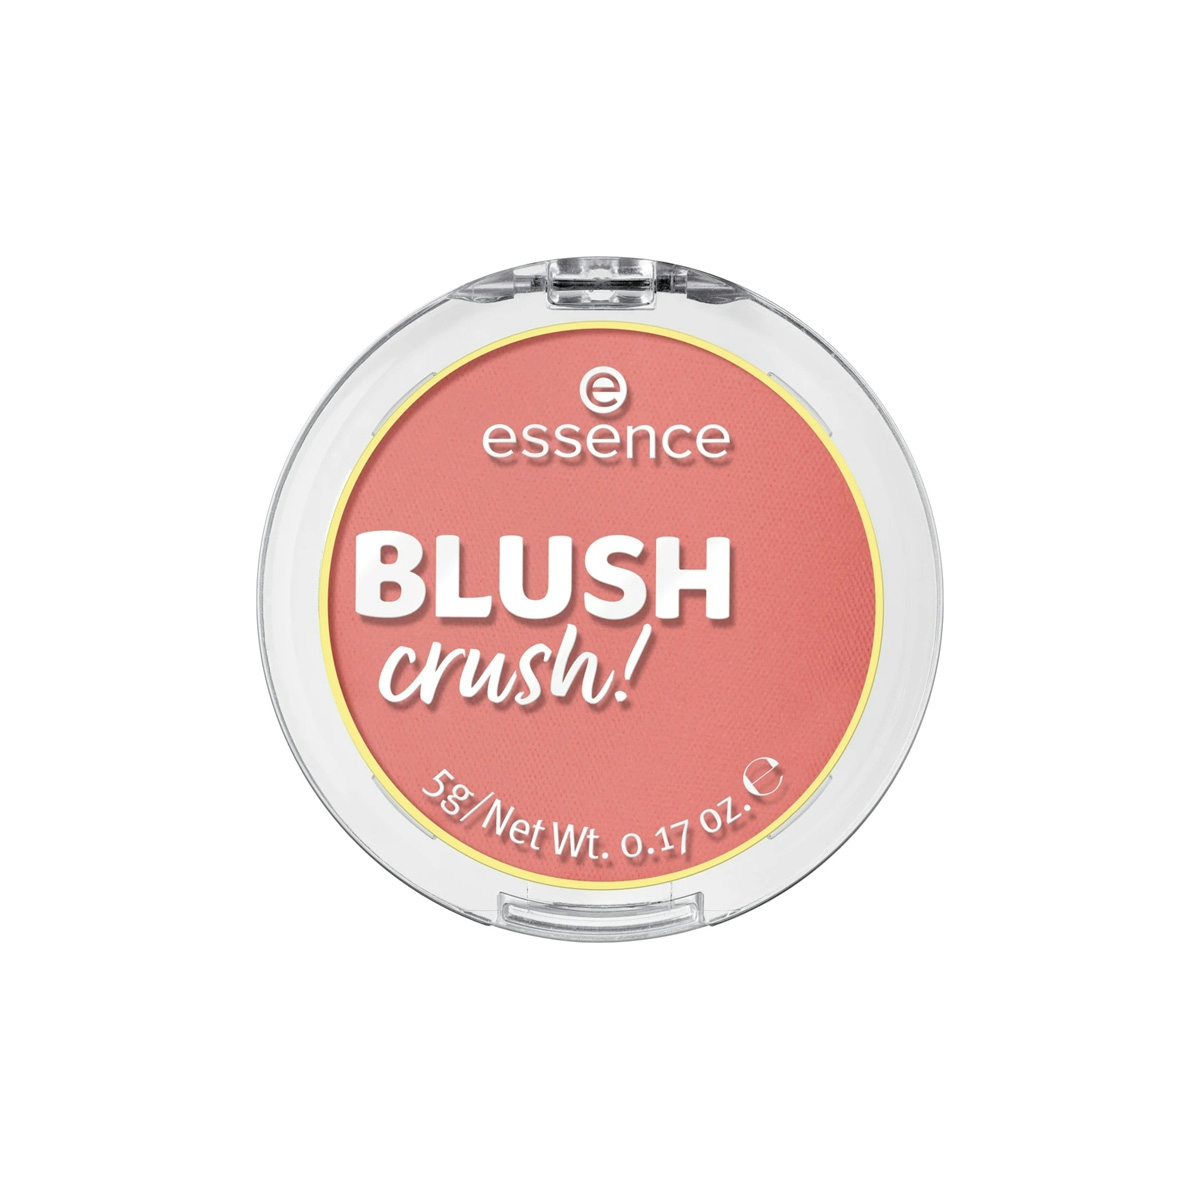 Essence Colorete Blush Crush! 20